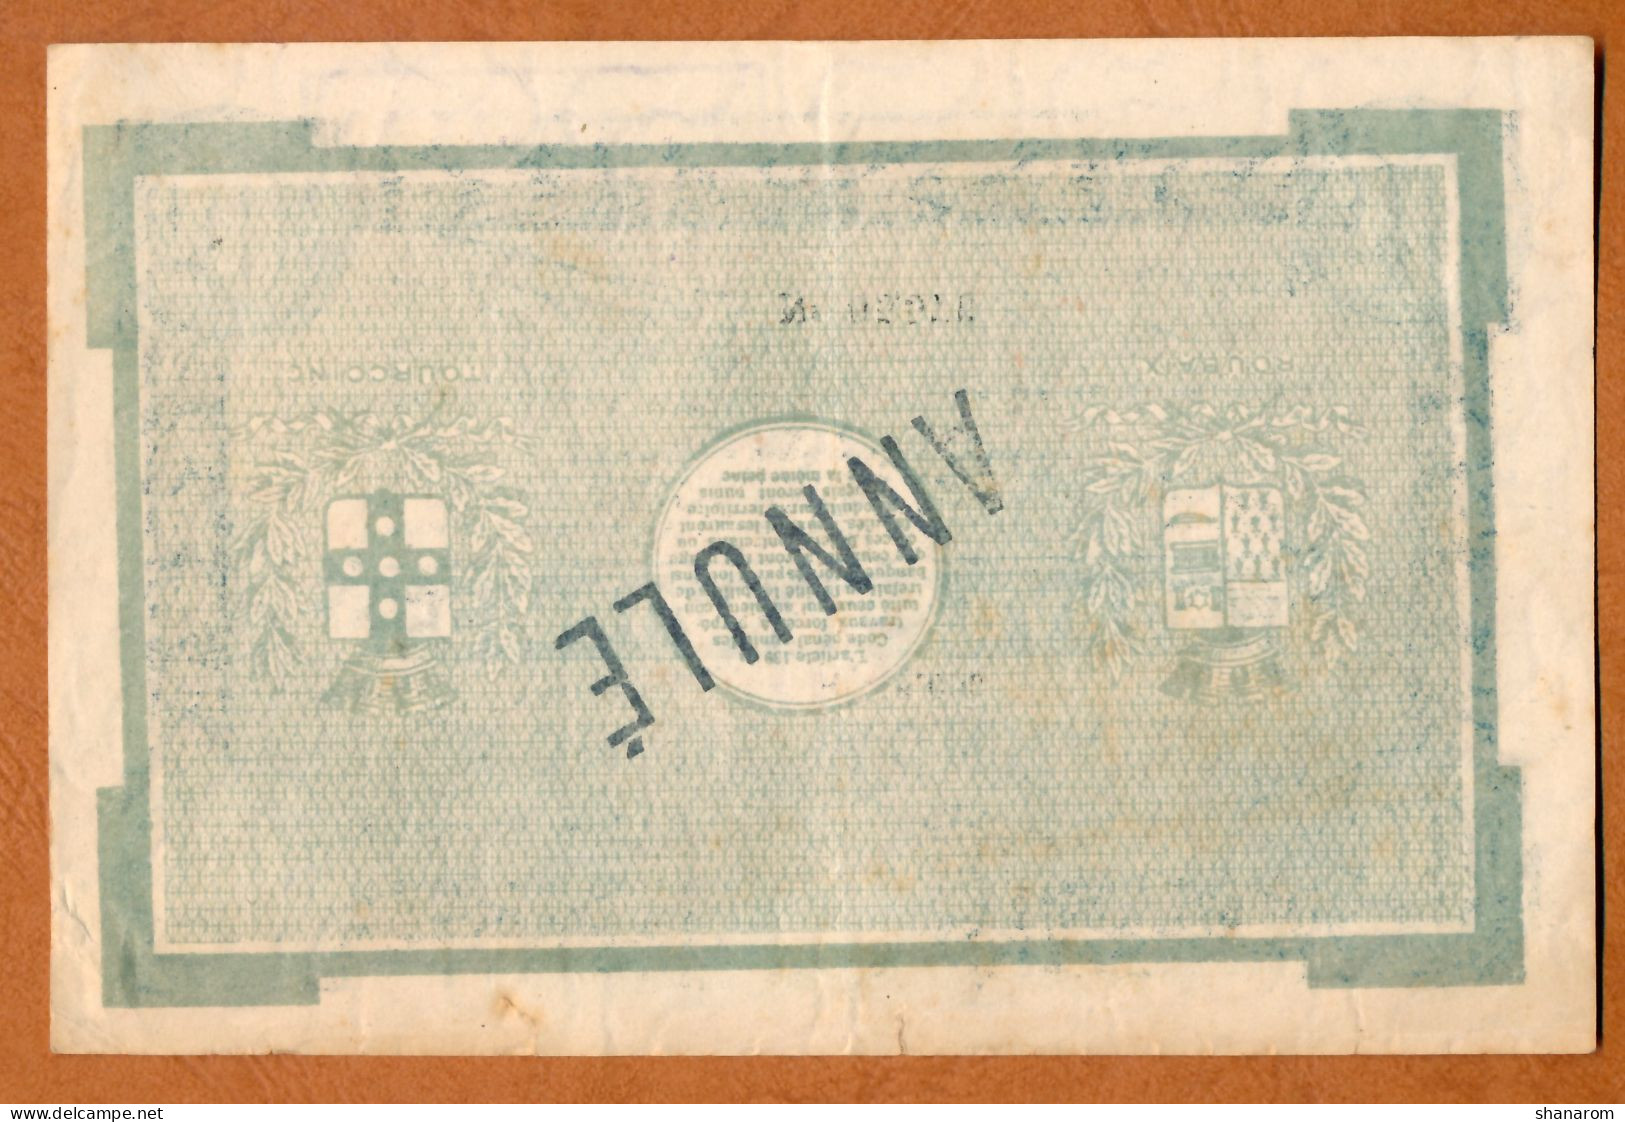 1914-18 // Ville De ROUBAIX & TOURCOING (59) // Décembre 1917 // Bon De Monnaie De 50 Francs // ANNULE // MUSTER - Bons & Nécessité